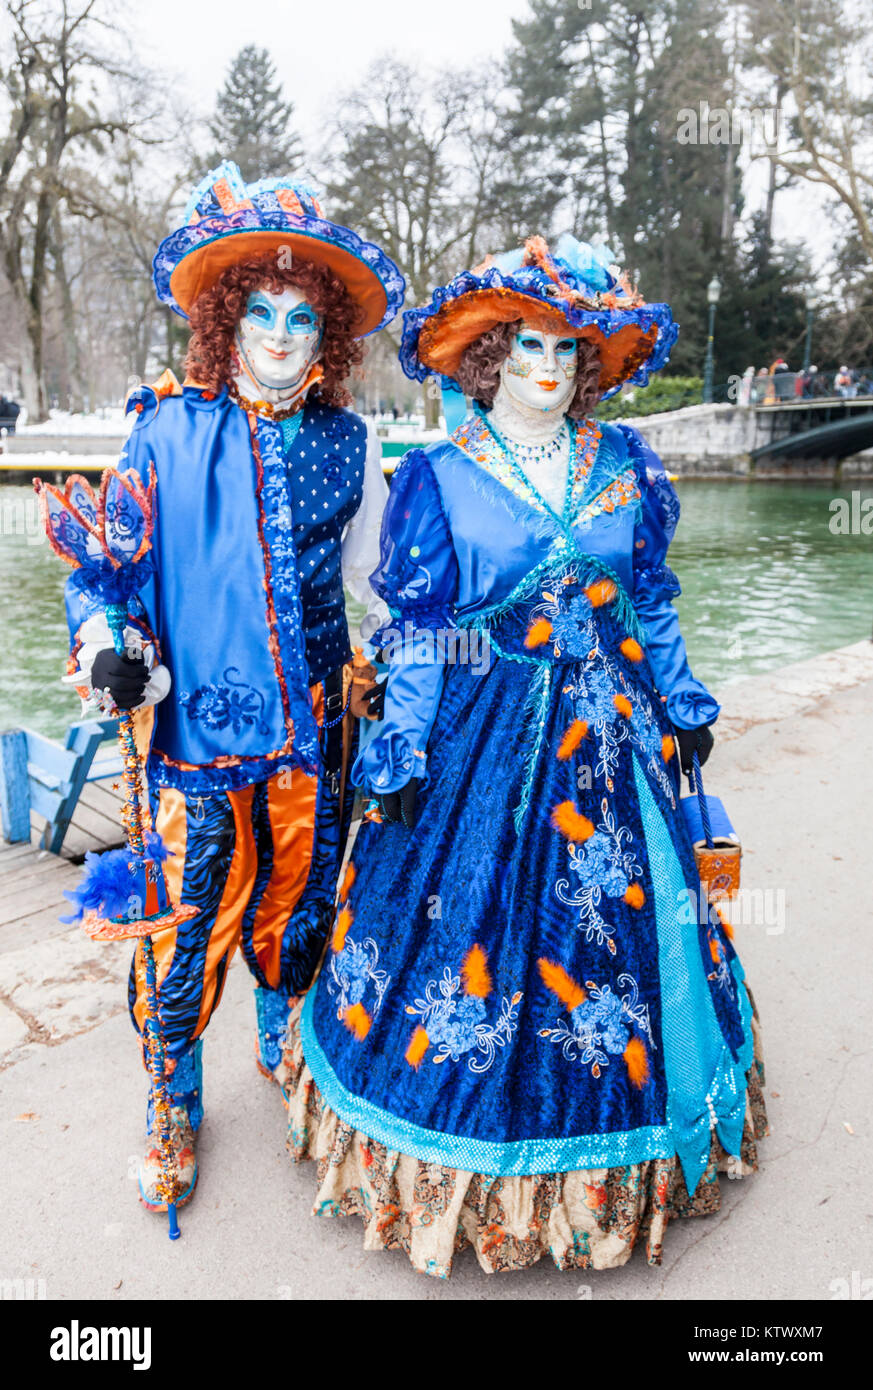 Annecy, Frankreich, 23. Februar 2013: Porträt einer verschleierten Paar in Annecy, Frankreich posiert, während einer venezianischen Karneval, feiert die Schönheit der Stockfoto